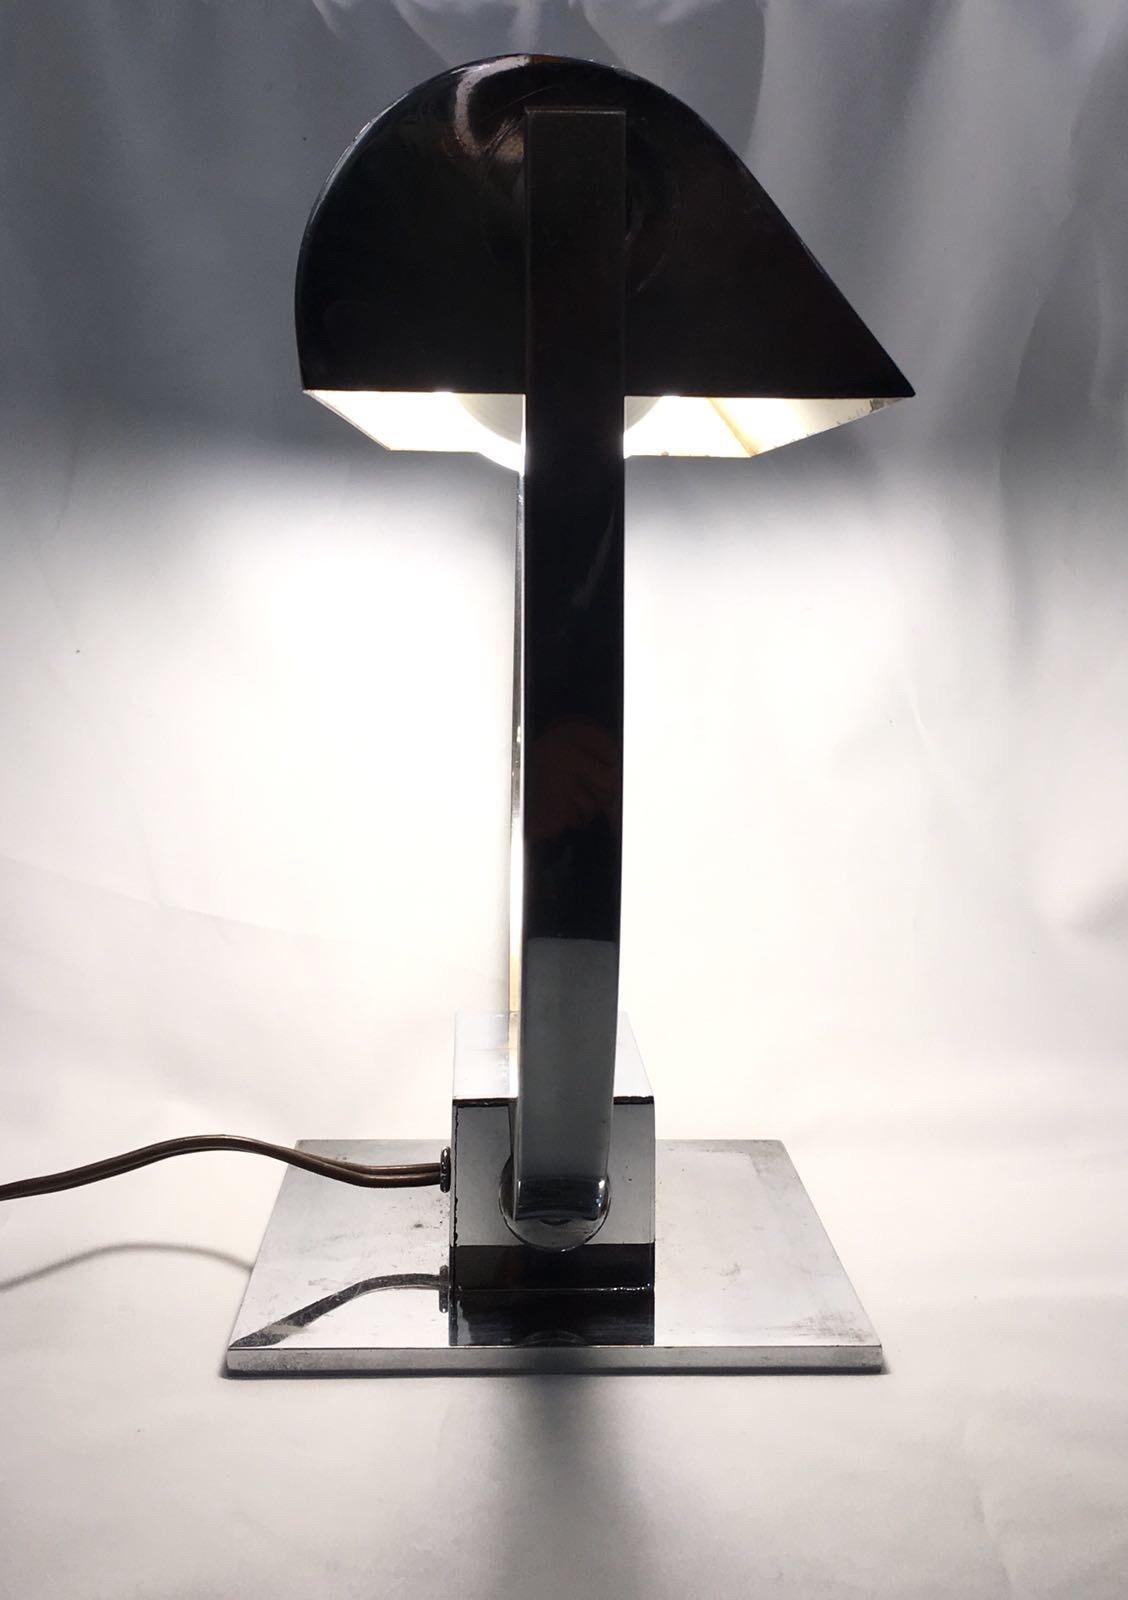 Art Deco chromed table lamp or desk lamp.
Adjustable chromed shade.
Measures: Height 23 cm, width 22.5 cm, depth 12 cm.